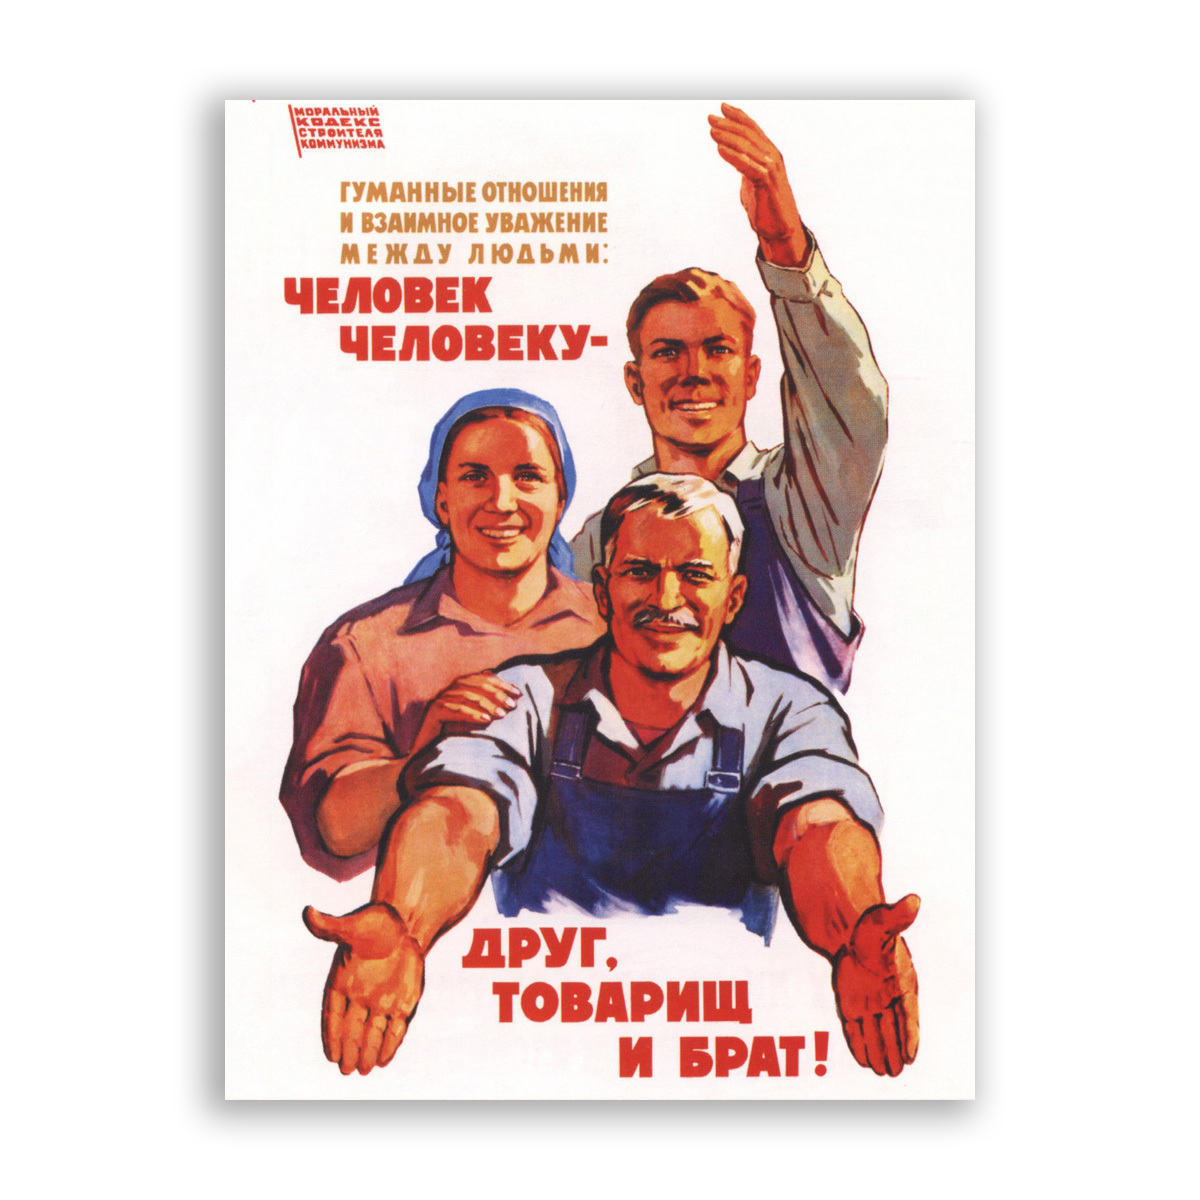 Советские люди плакат. Друг товарищ и брат. Человек человеку друг товарищ и брат. Советские плакаты. Советский человек плакат.